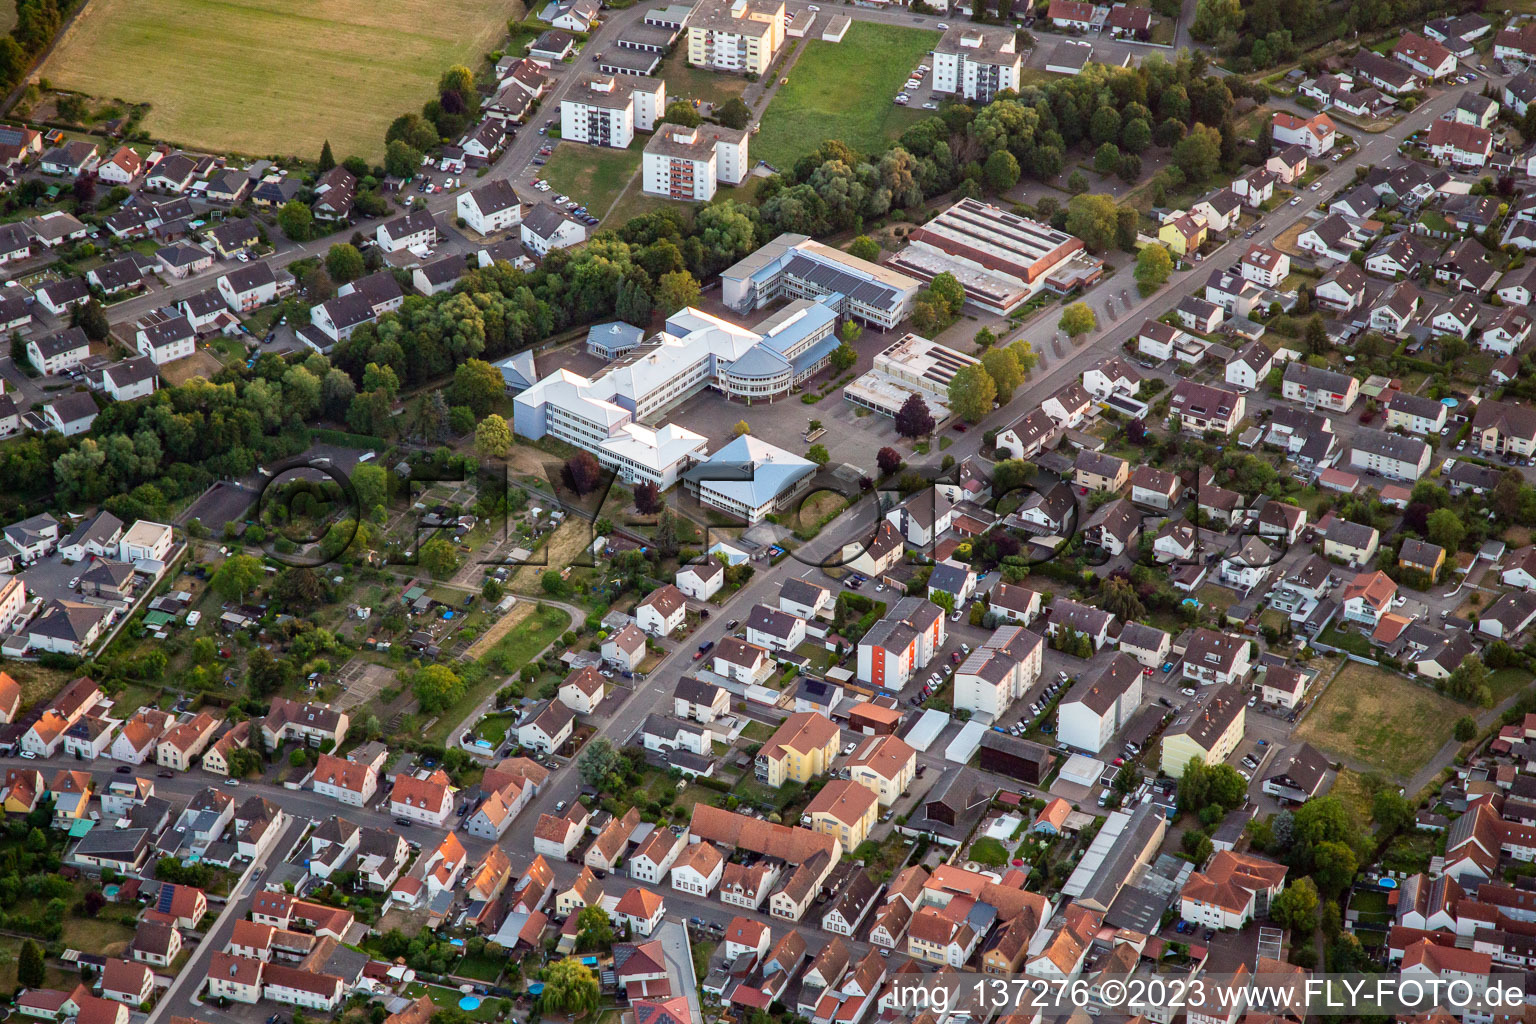 Vue aérienne de Centre scolaire PAMINA Herxheim à Herxheim bei Landau dans le département Rhénanie-Palatinat, Allemagne